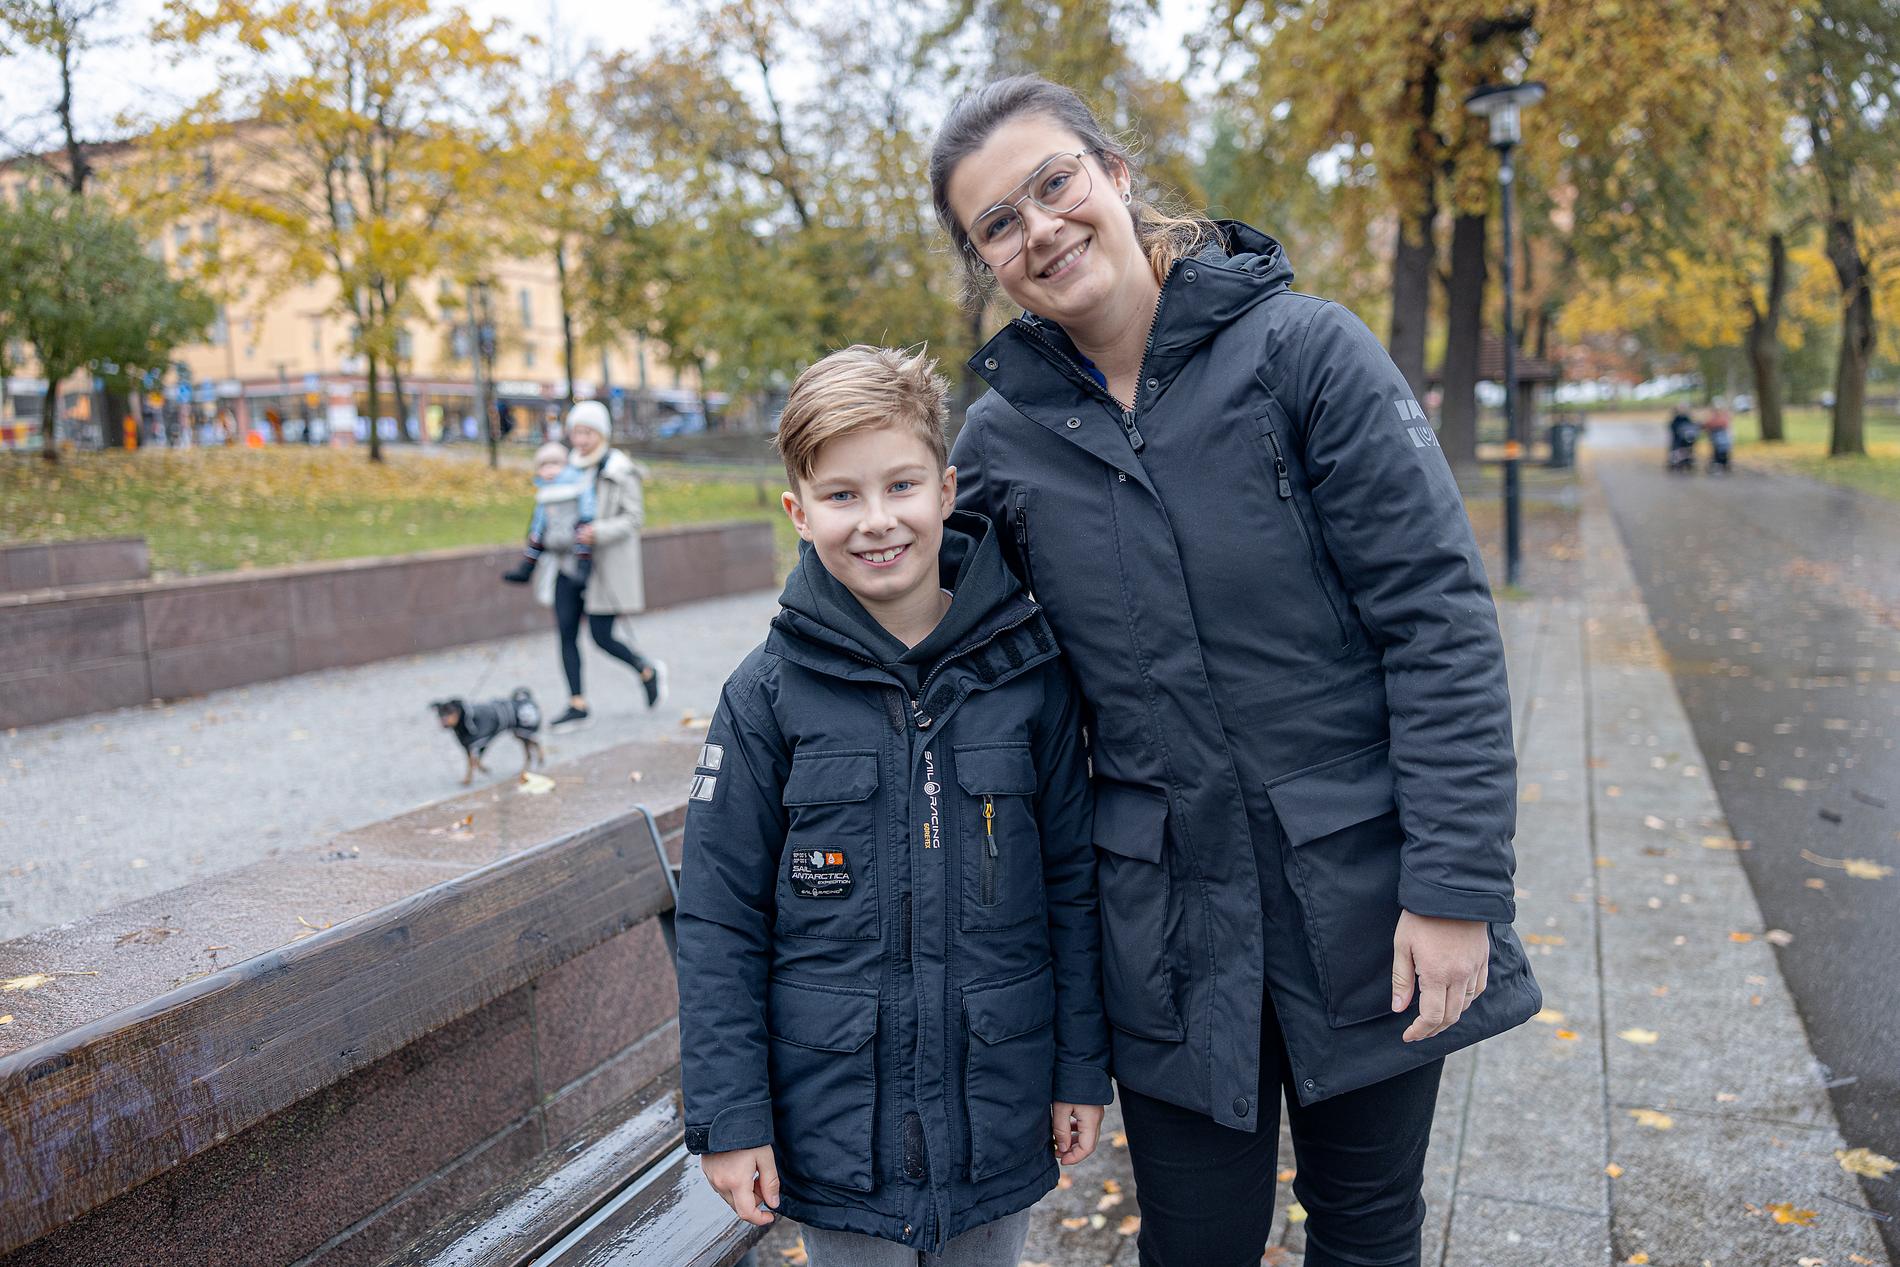 ”Edin har alltid varit väldigt omtänksam” säger mamma Disa om sonen. Aftonbladet möter familjen, som annars bor i Lidköping, under ett besök i Stockholm.